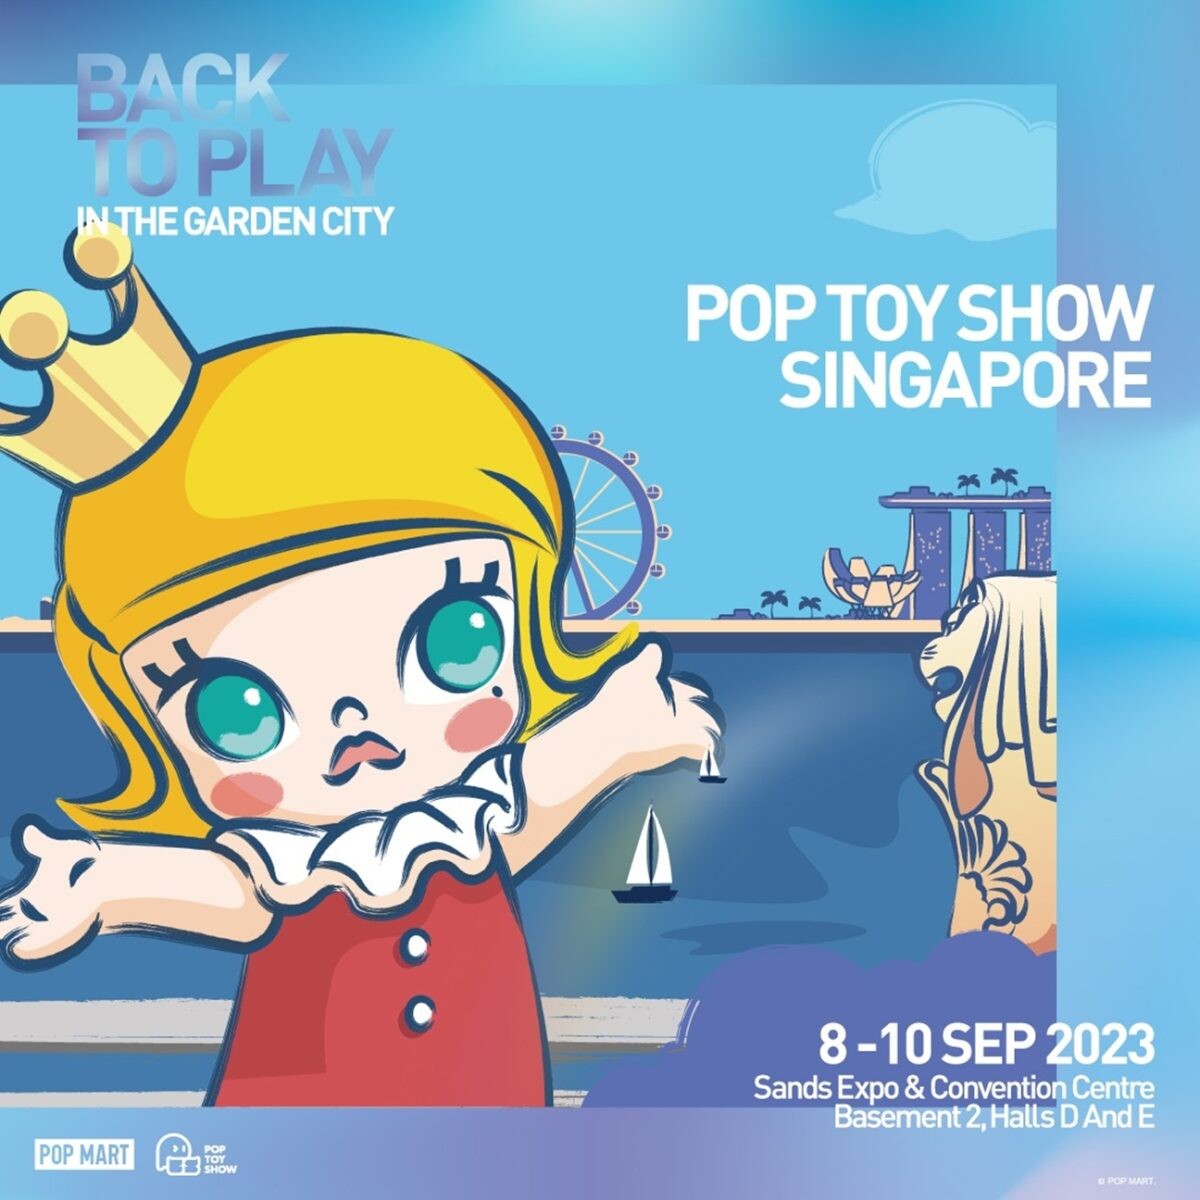 "เลยดูดี" ชวน นักสะสม Art Toys ไทย เที่ยวงาน "POP TOY SHOW SINGAPORE 2023" ครั้งแรกของ SEA!! กับงานแสดงของเล่นที่ใหญ่ที่สุดในเอเชีย!!